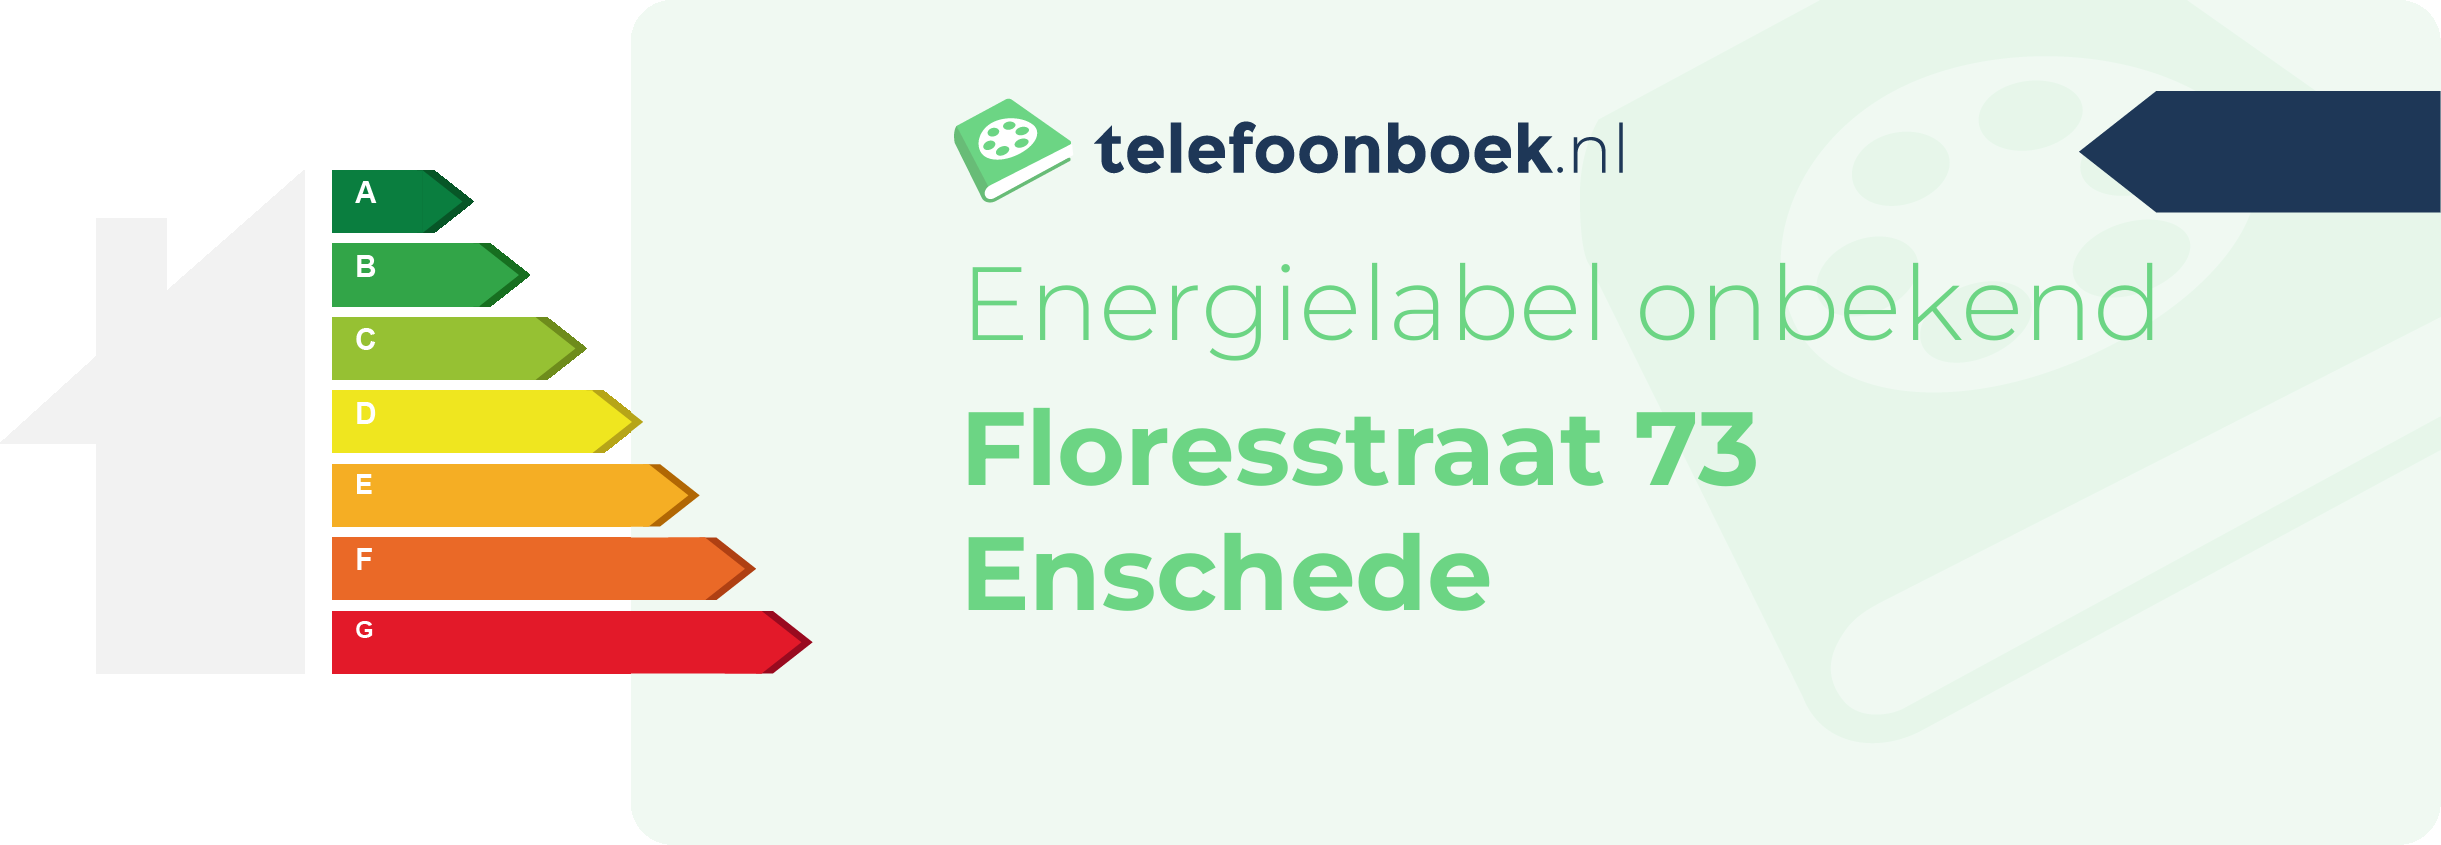 Energielabel Floresstraat 73 Enschede